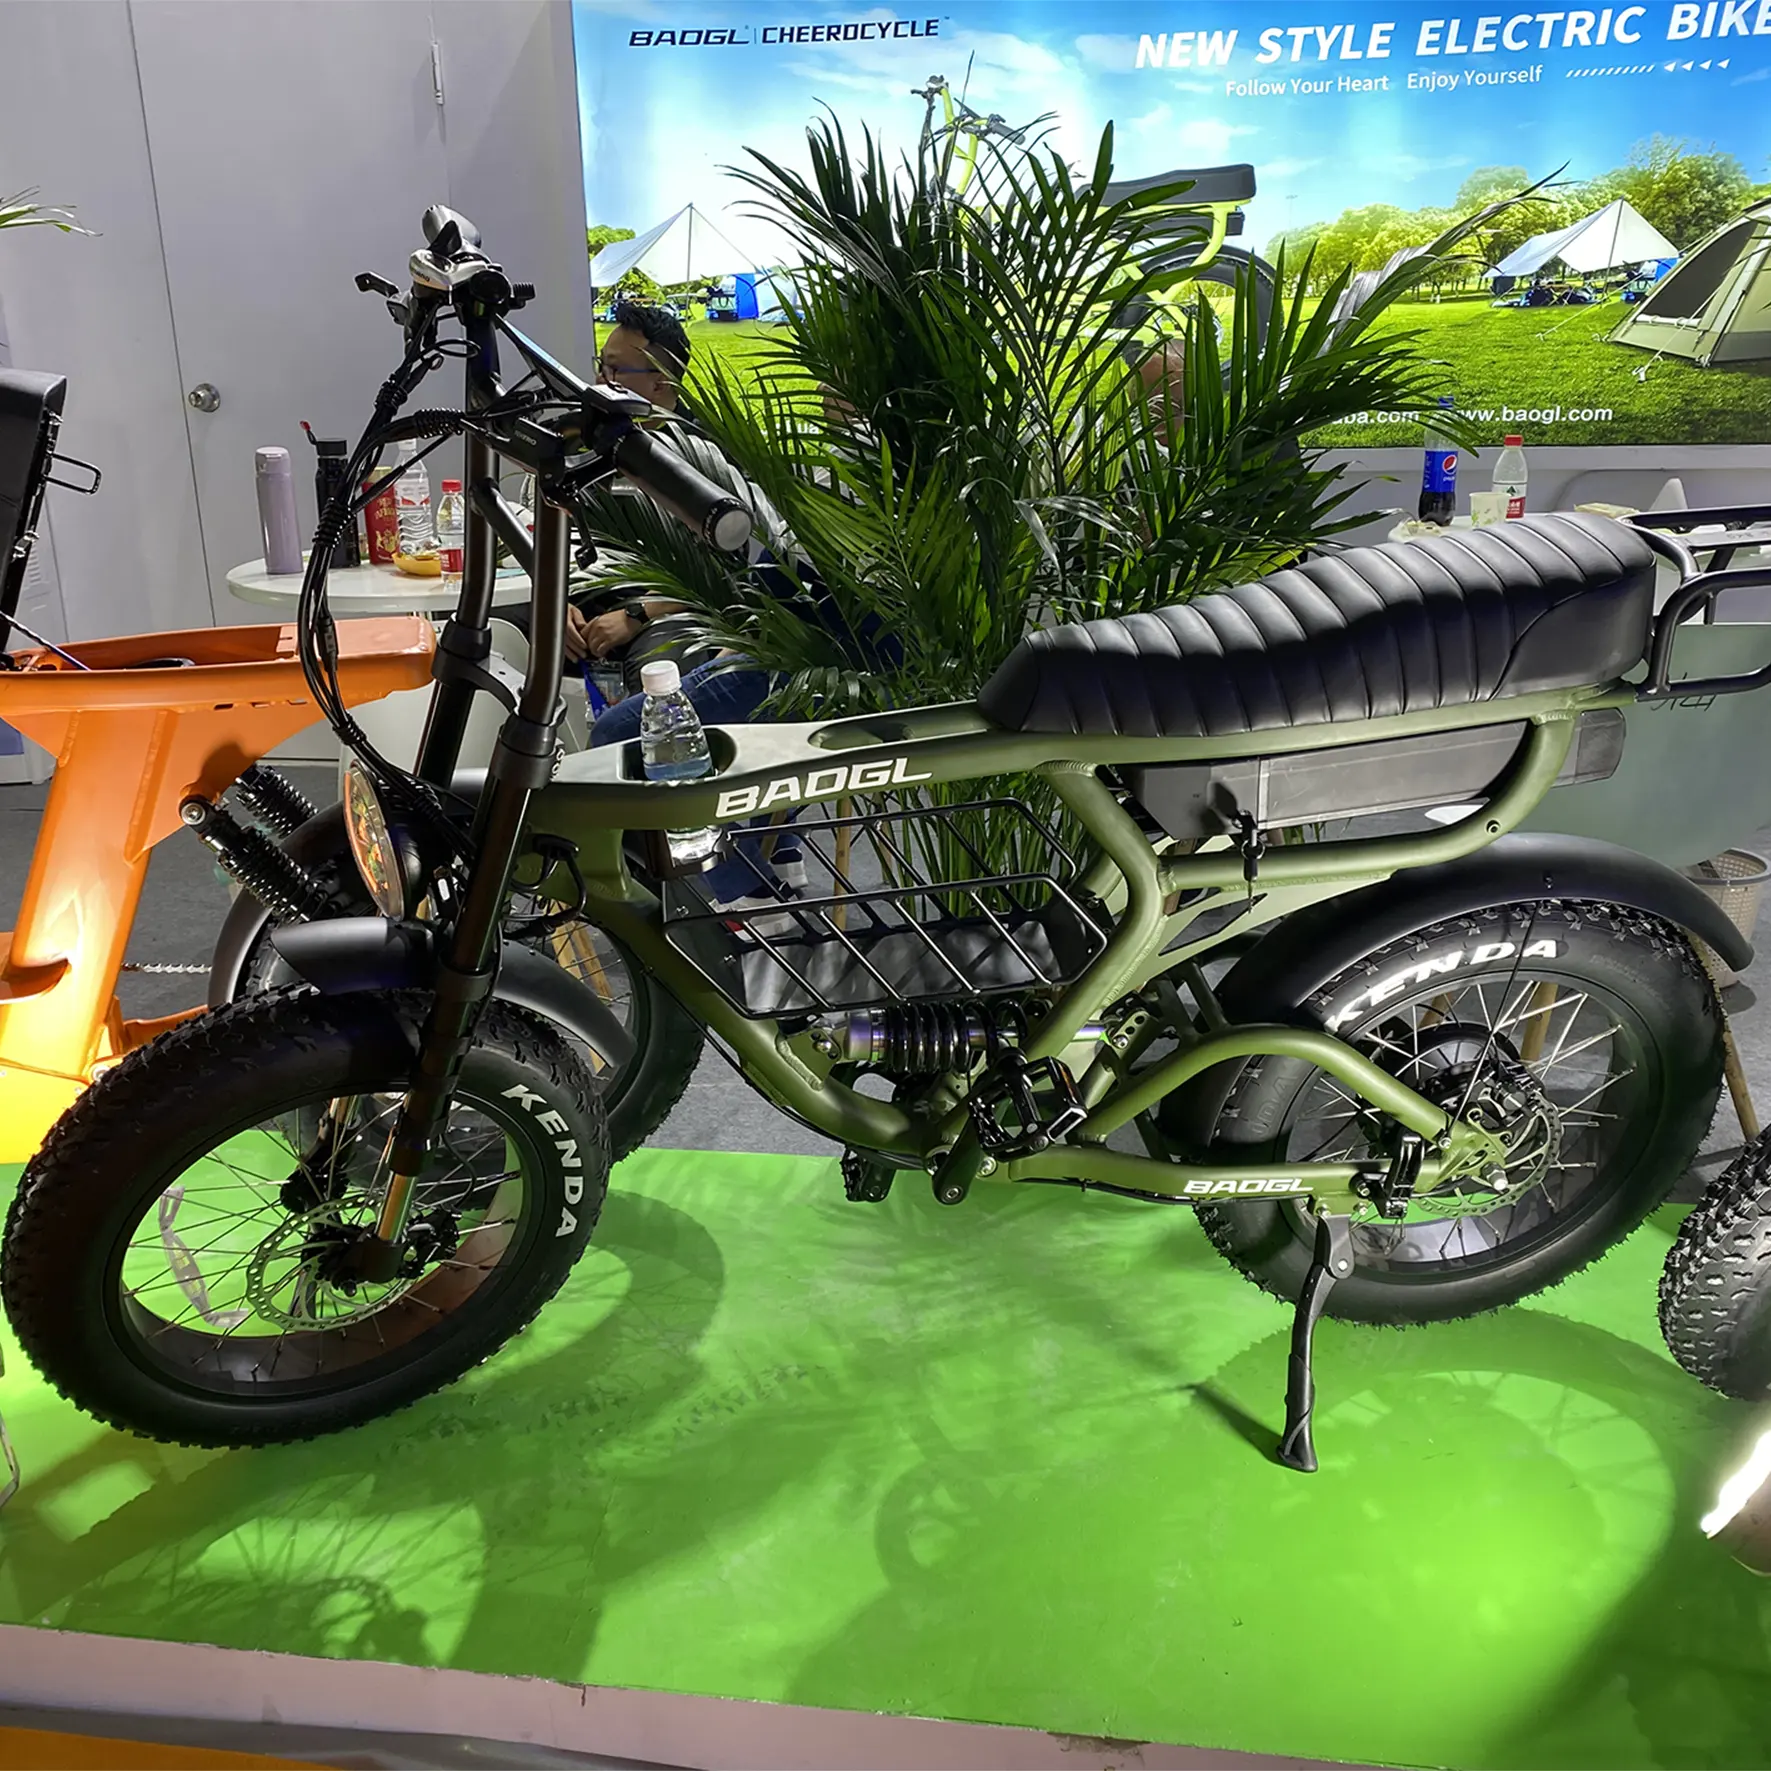 Melhor venda gordura pneu ebike suspensão completa chopper bicicleta sujeira bicicleta elétrica fatbike